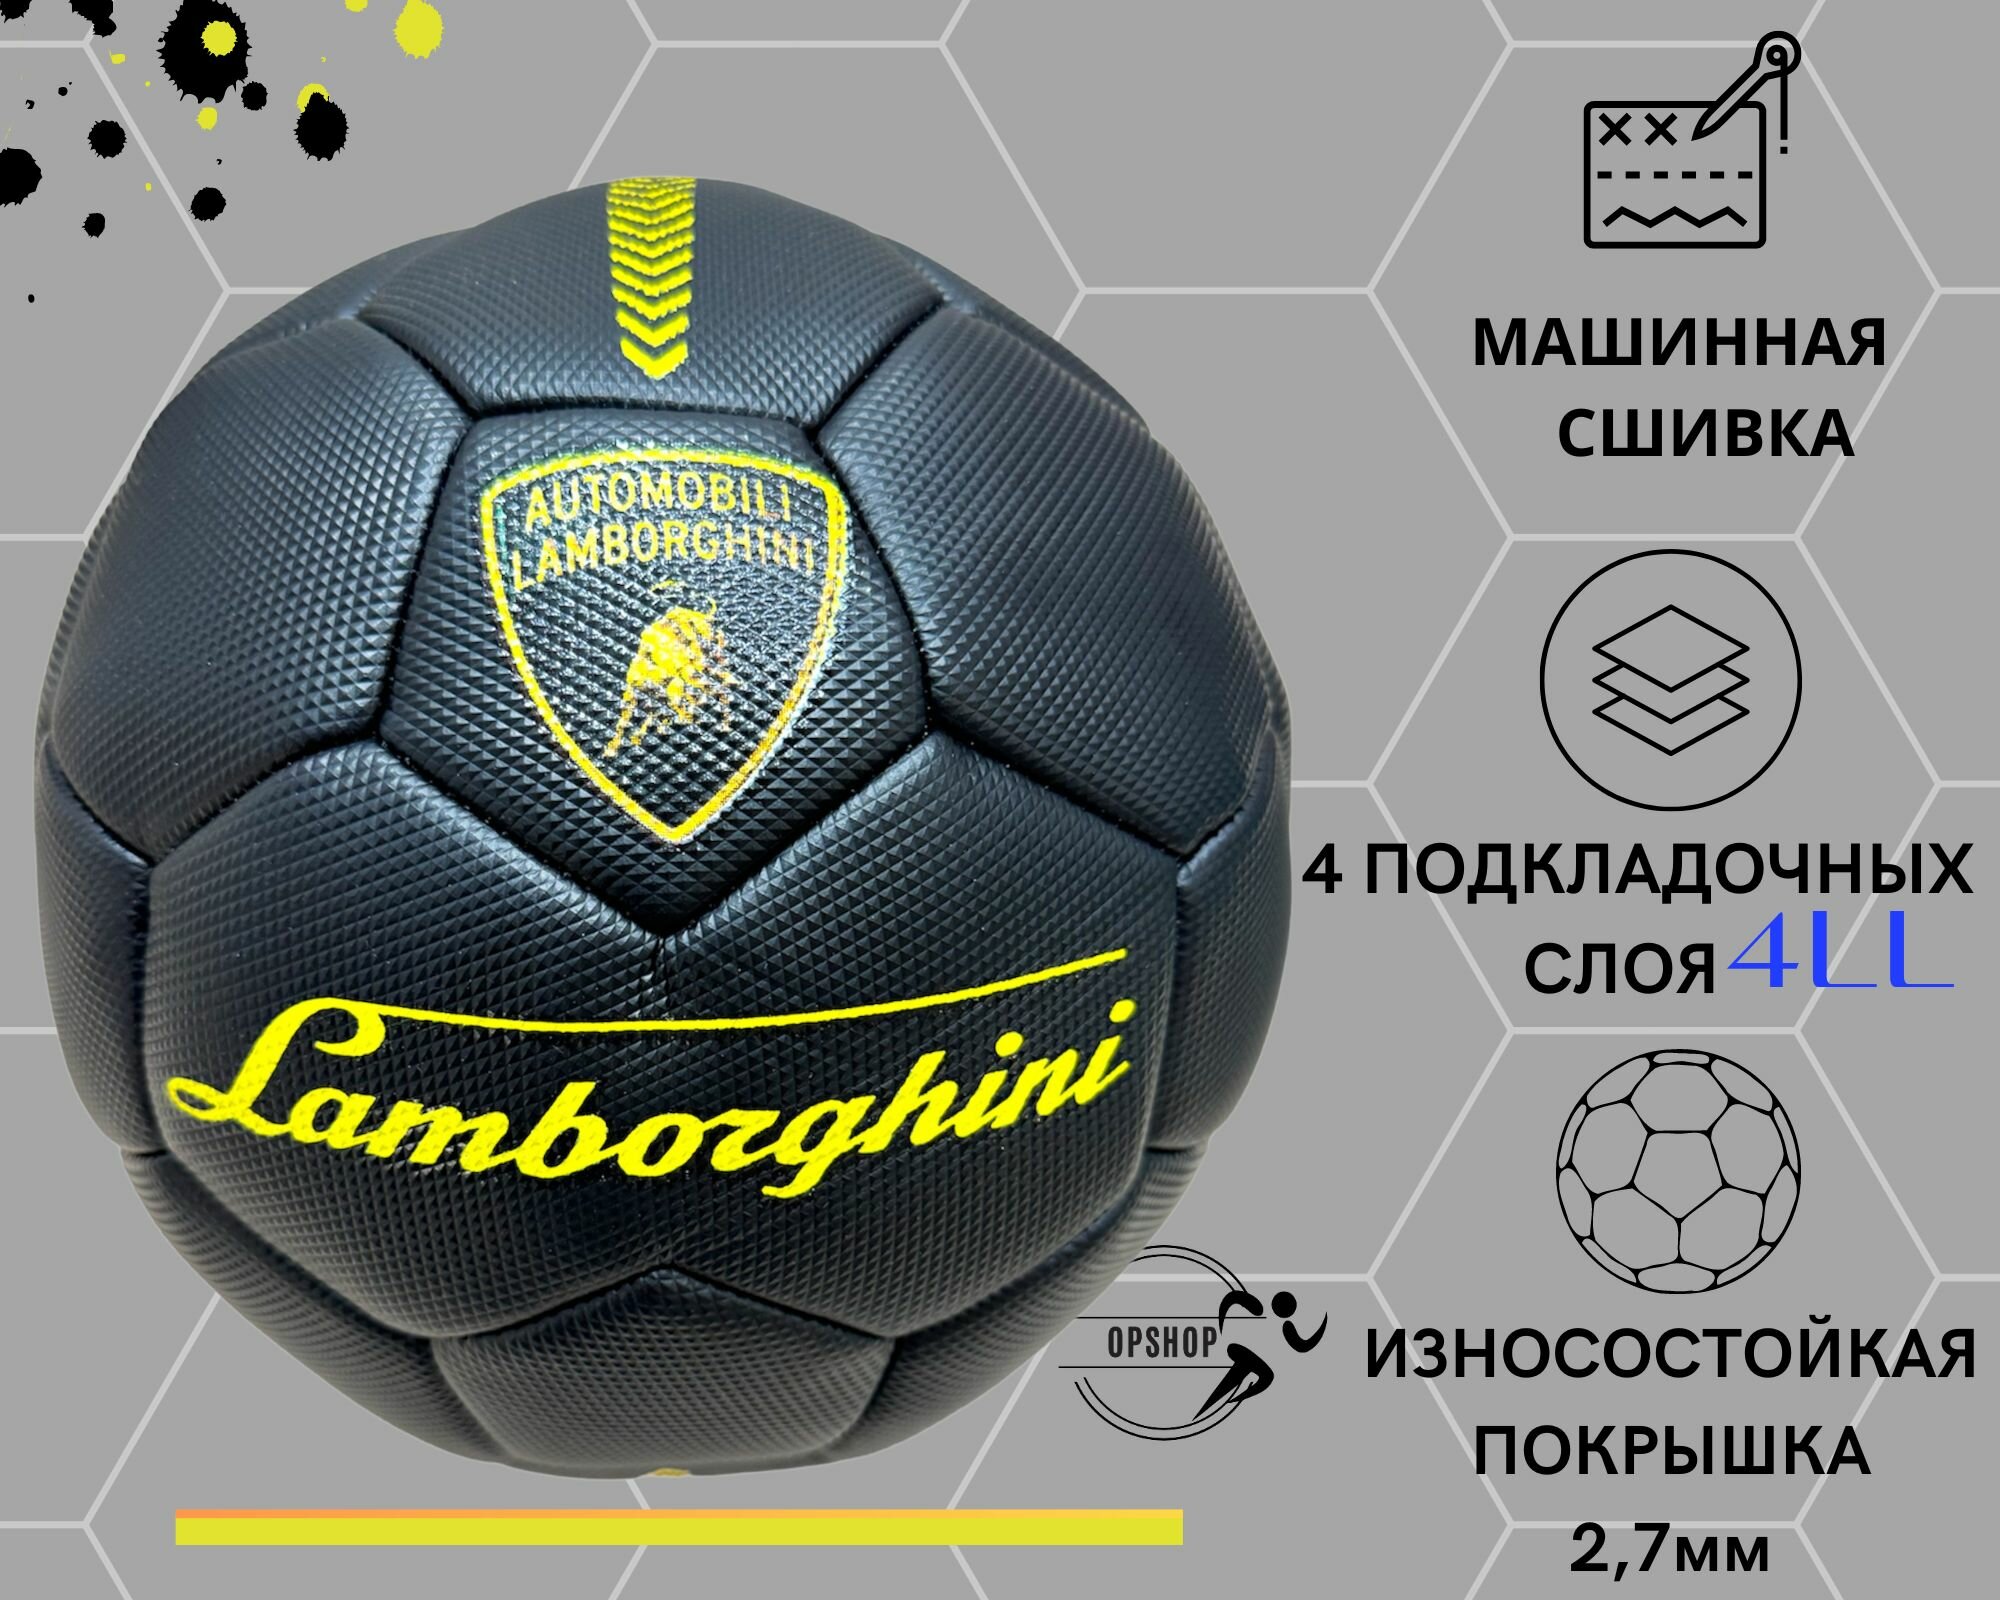 Футбольный мяч Lamborghini Deep Black черный 5 размер